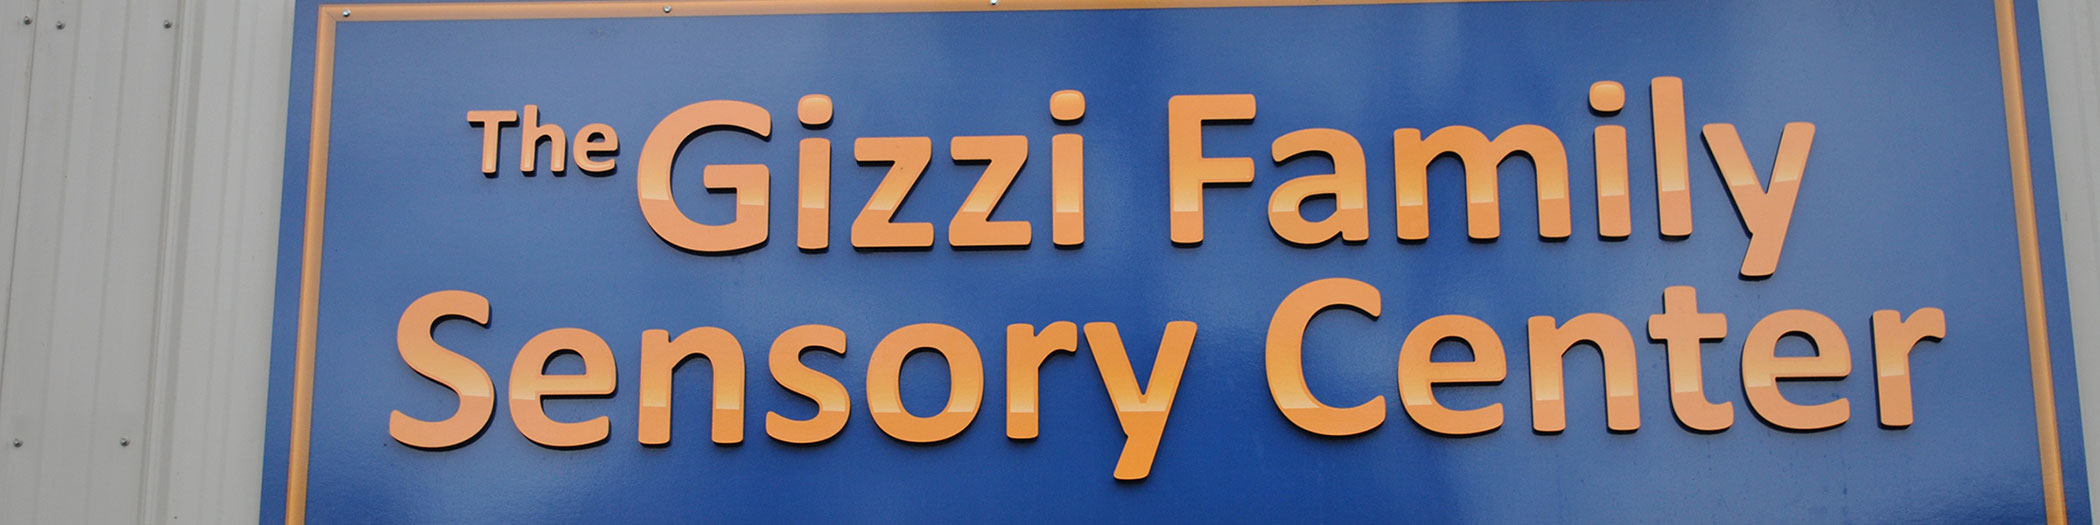 Sunshine Campus Gizzi Sensory Center-banner